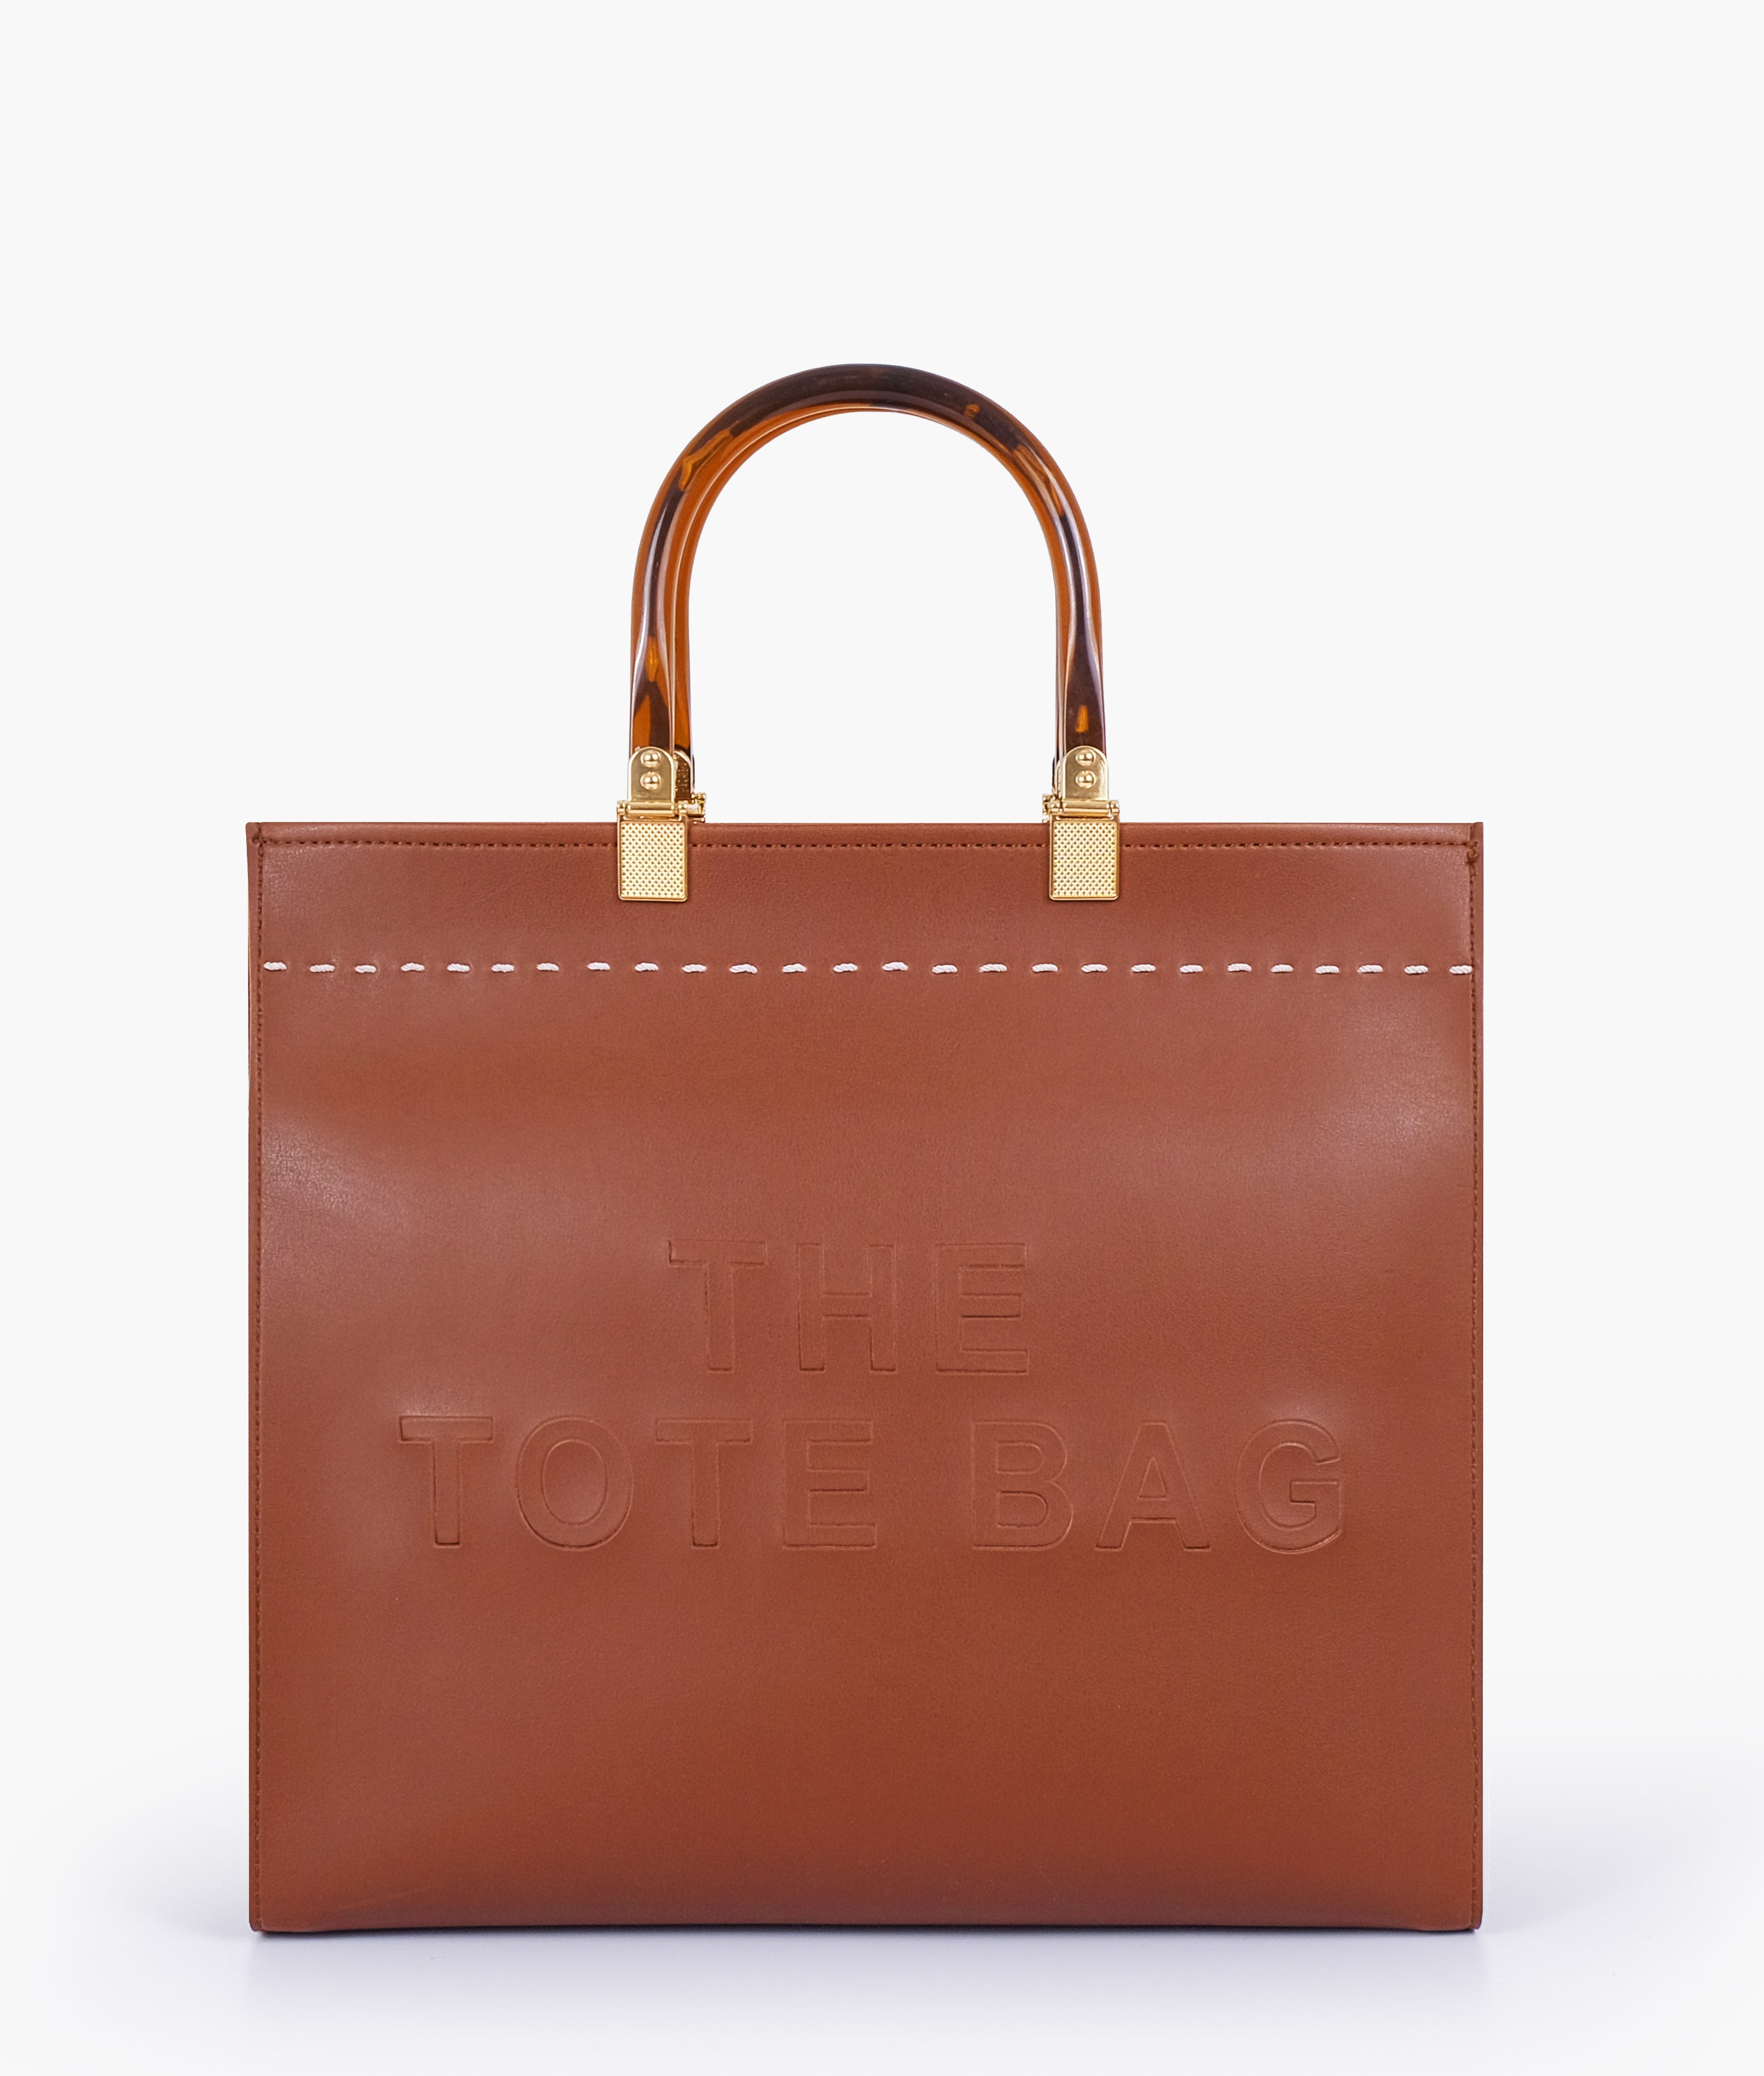 Brown signature tote bag